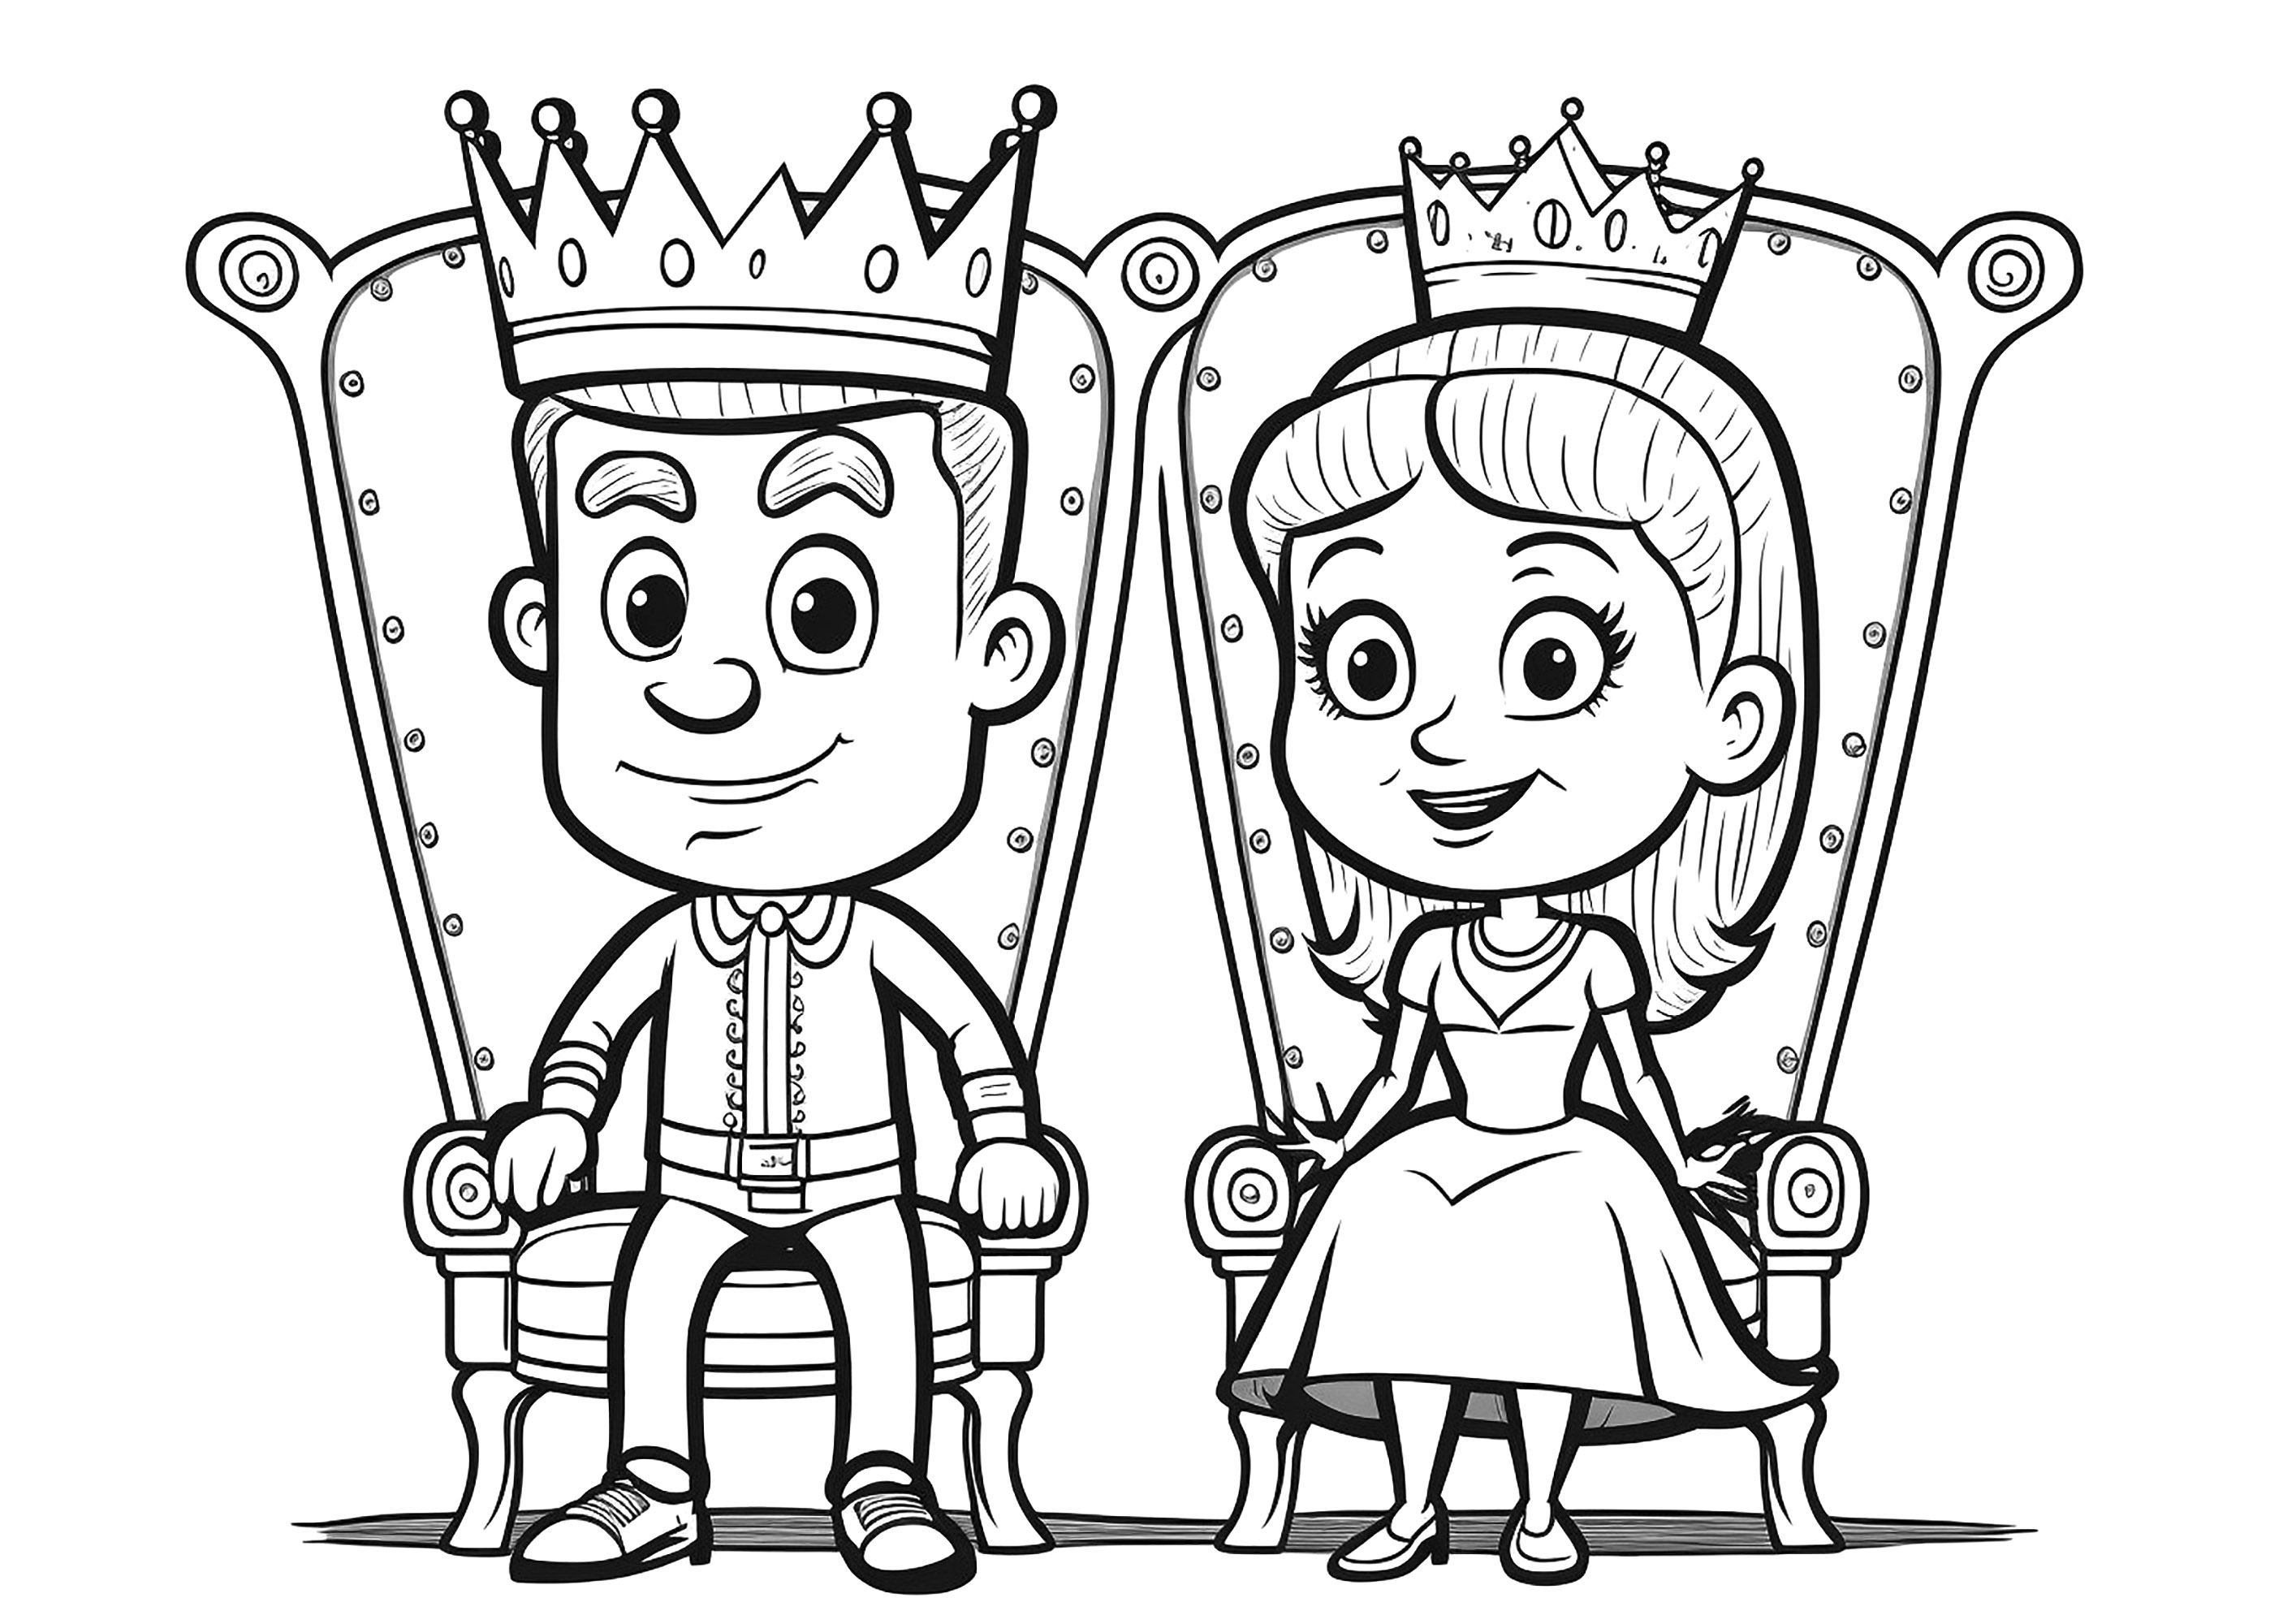 Desenho de Princesa e rei para Colorir - Colorir.com